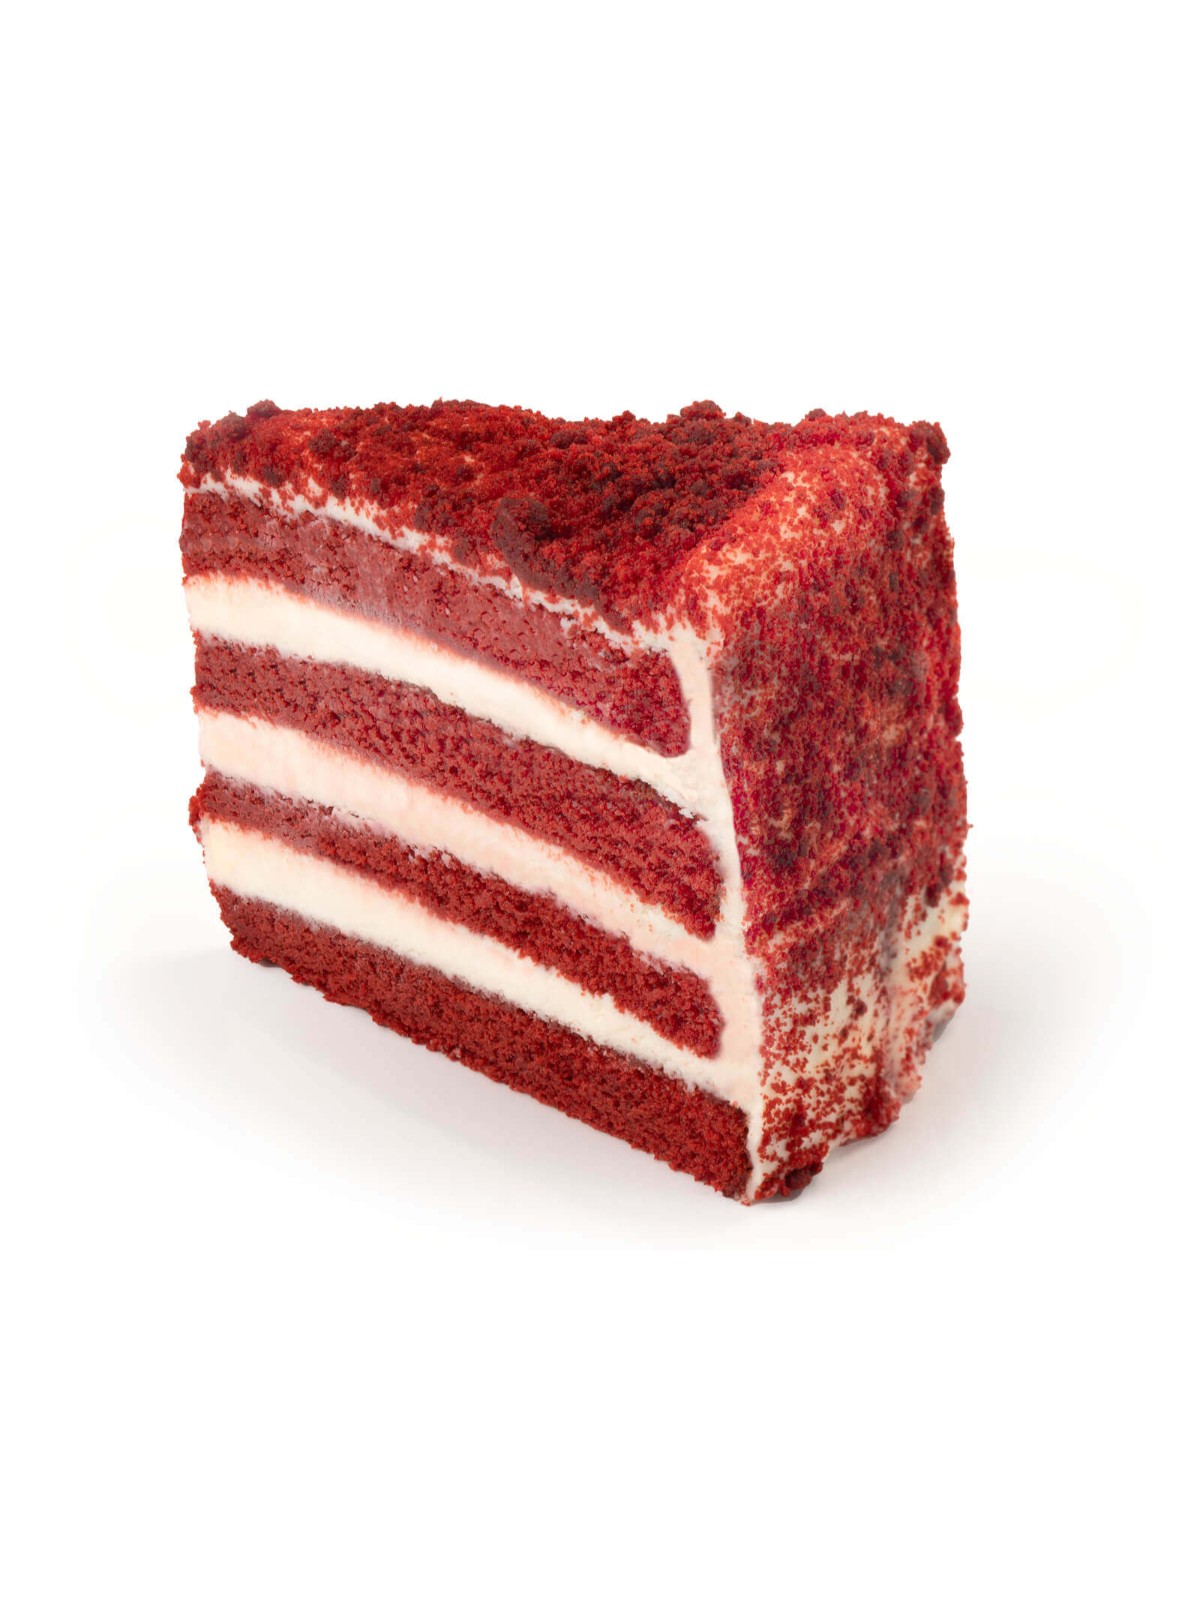 Order Buddy V's Red Velvet Cake Slice (12.33 oz) food online from Stock-Up Mart store, Houston on bringmethat.com